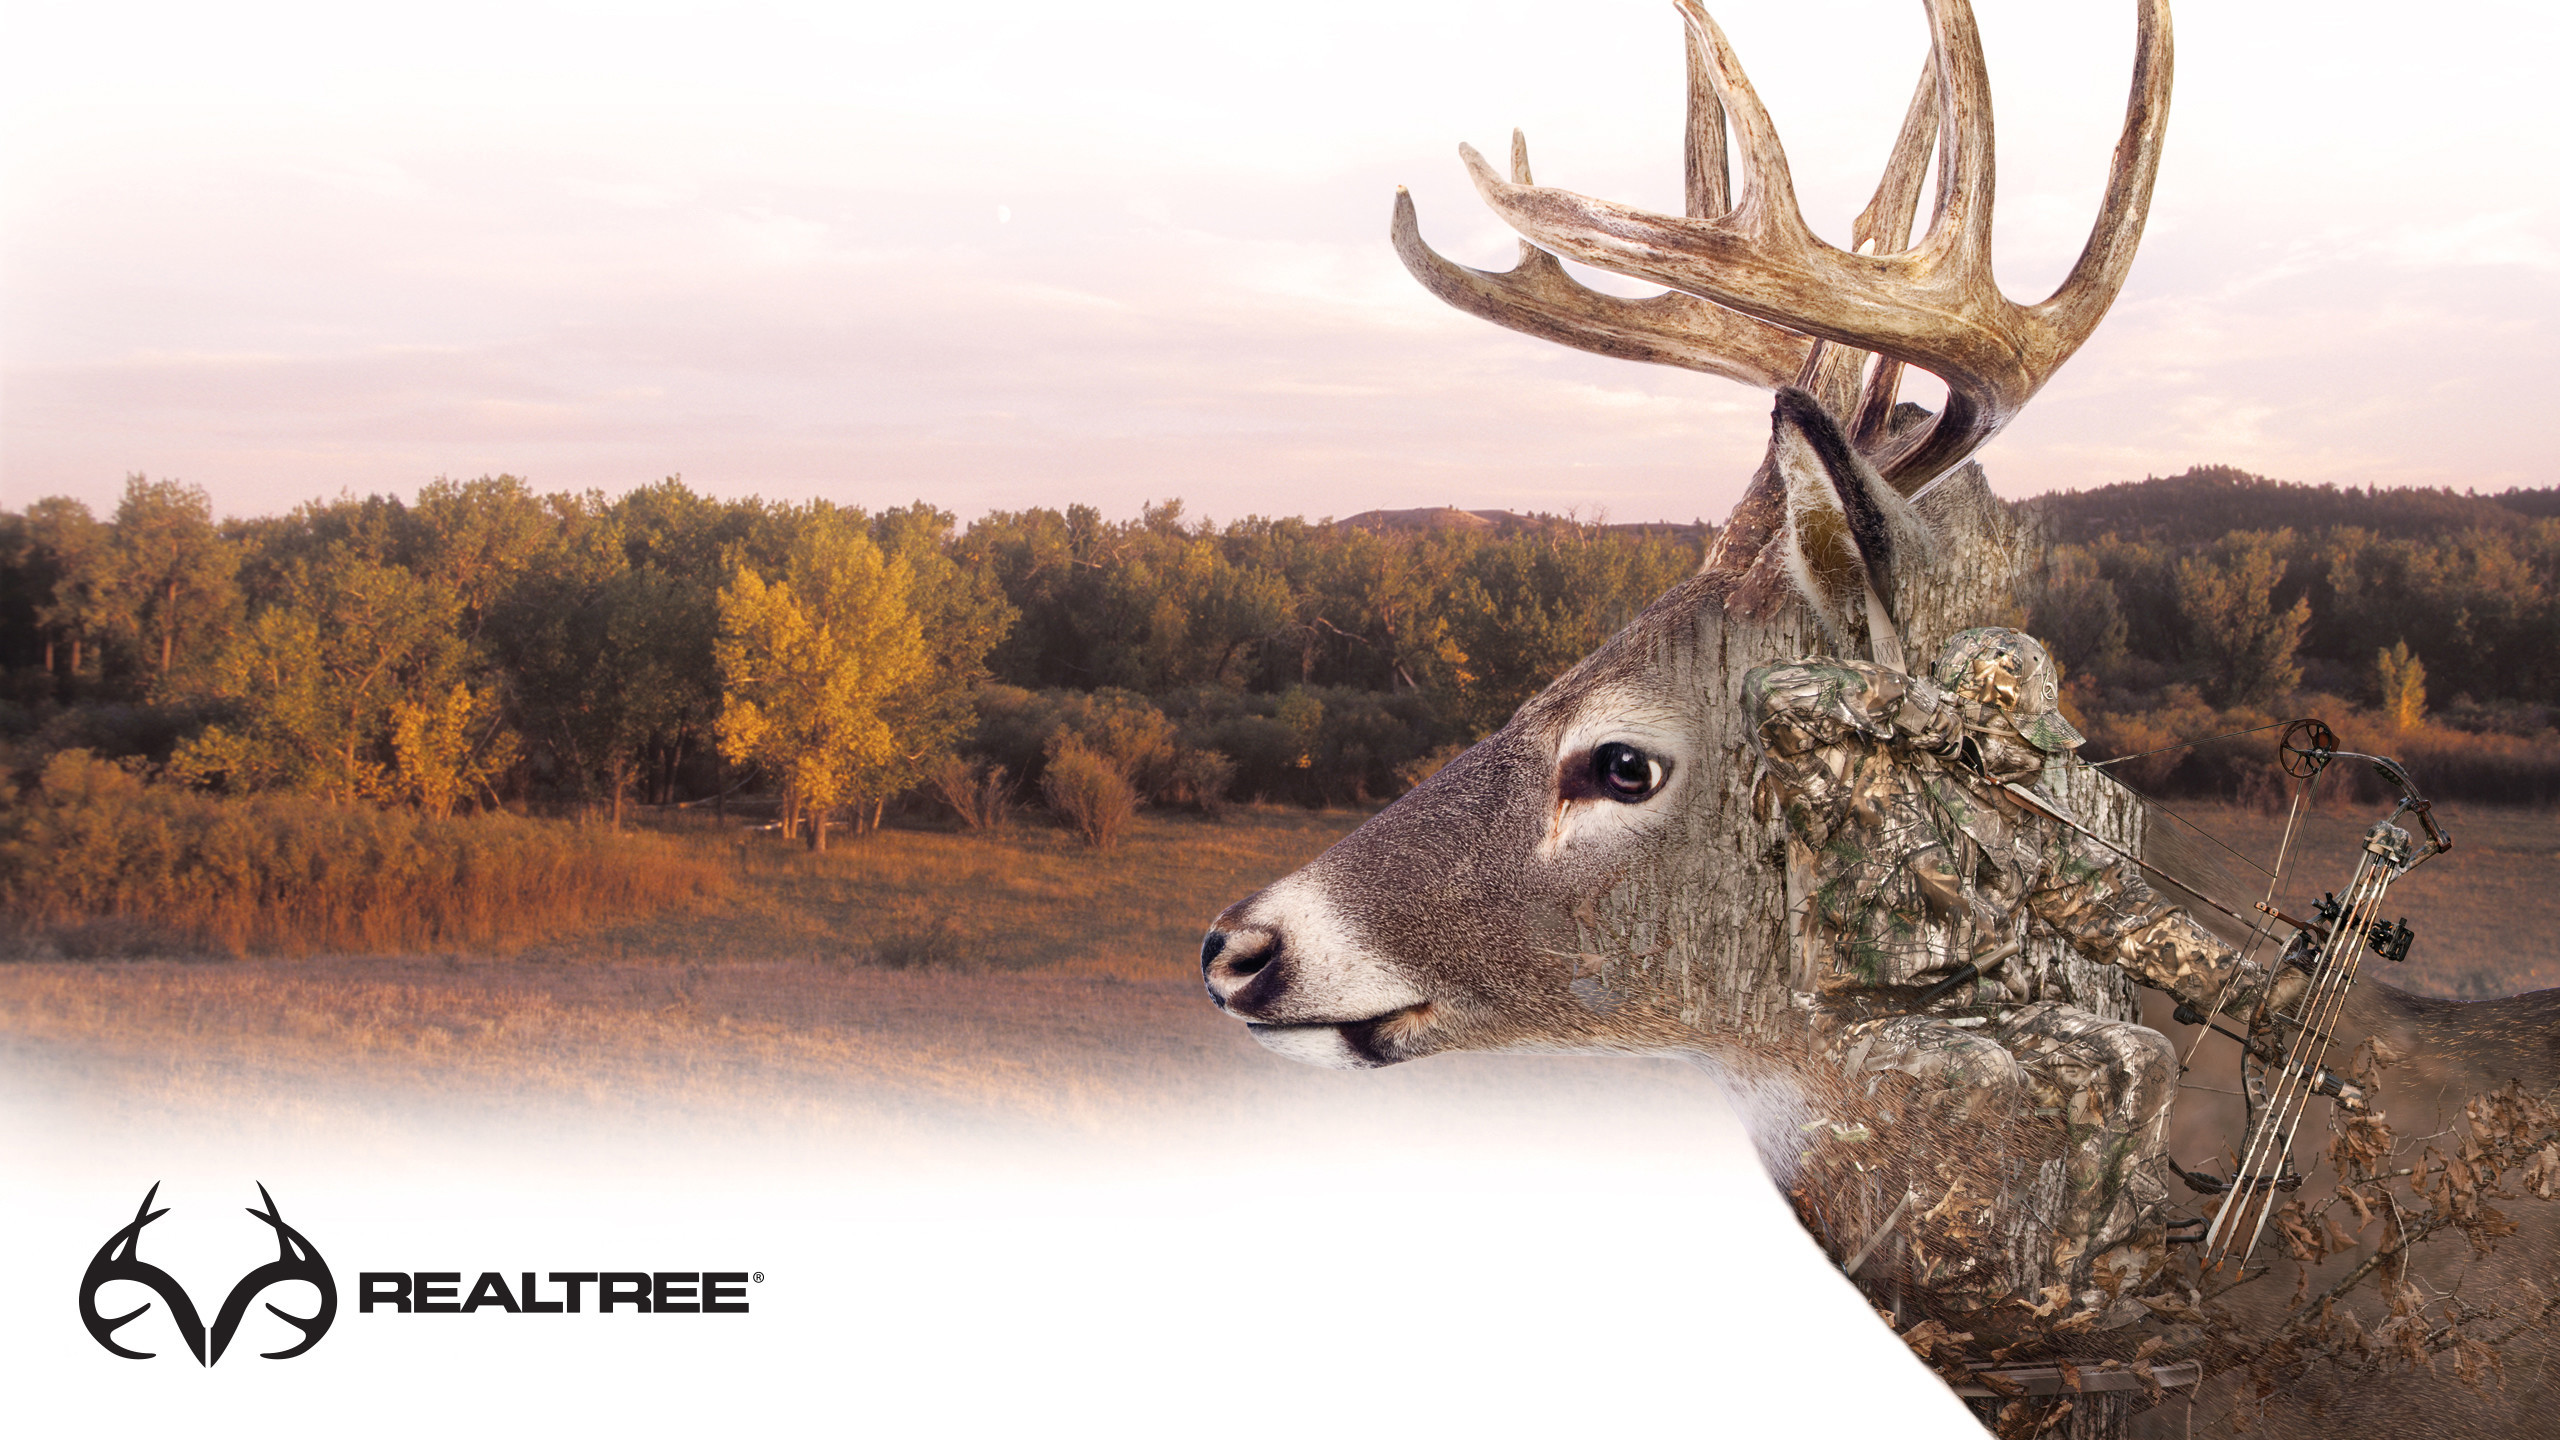 2560x1440 1920x1080 Deer Hunting Wallpaper Luxury Mule Deer Hunting with A Recurve  Bow Of Deer Hunting Wallpaper Luxury